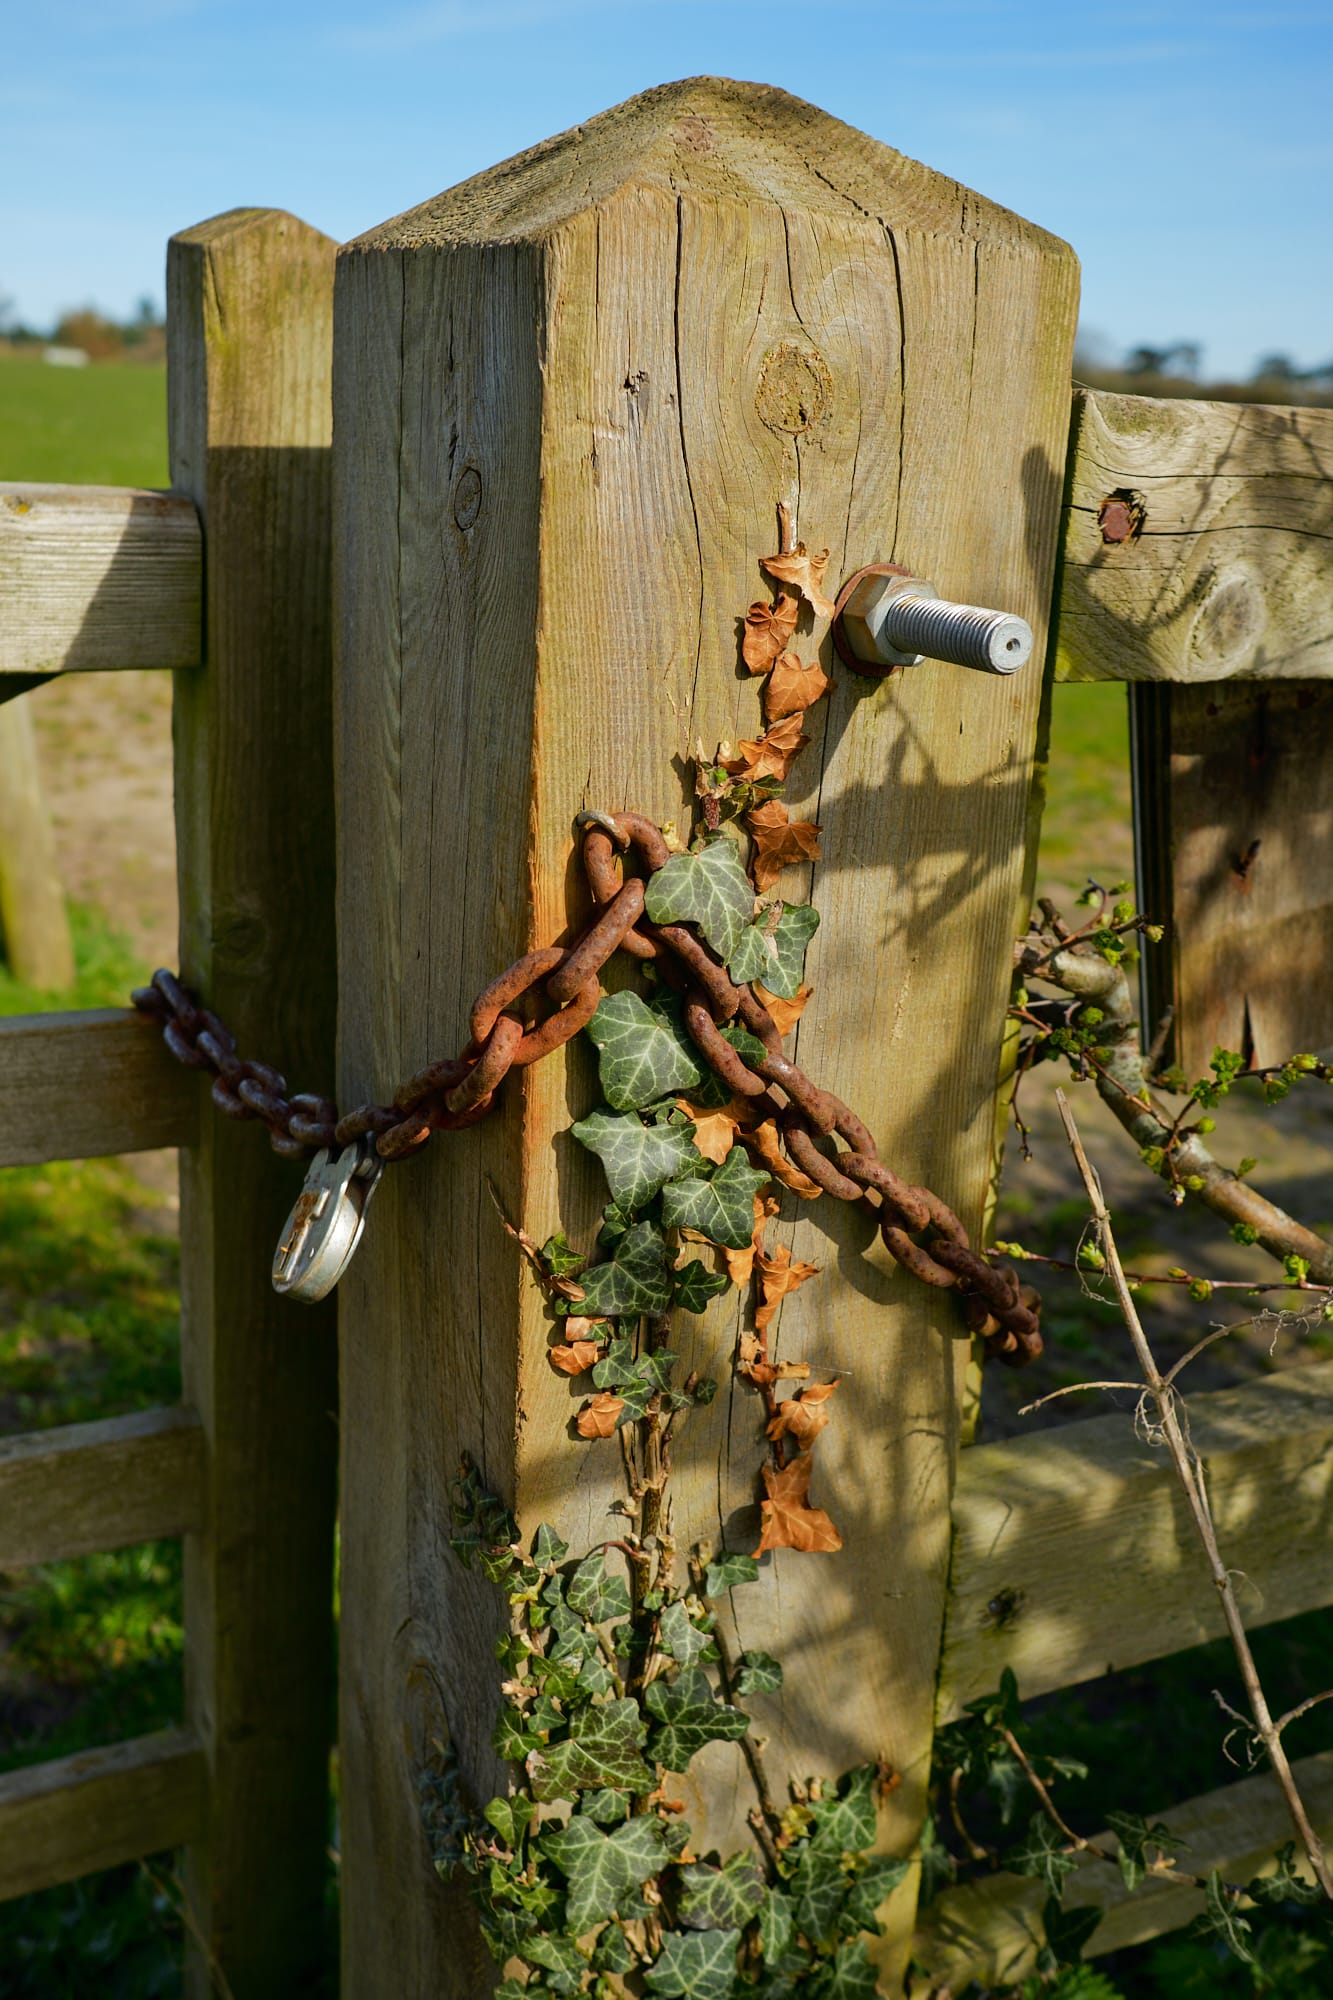 rusty chain around gatepost